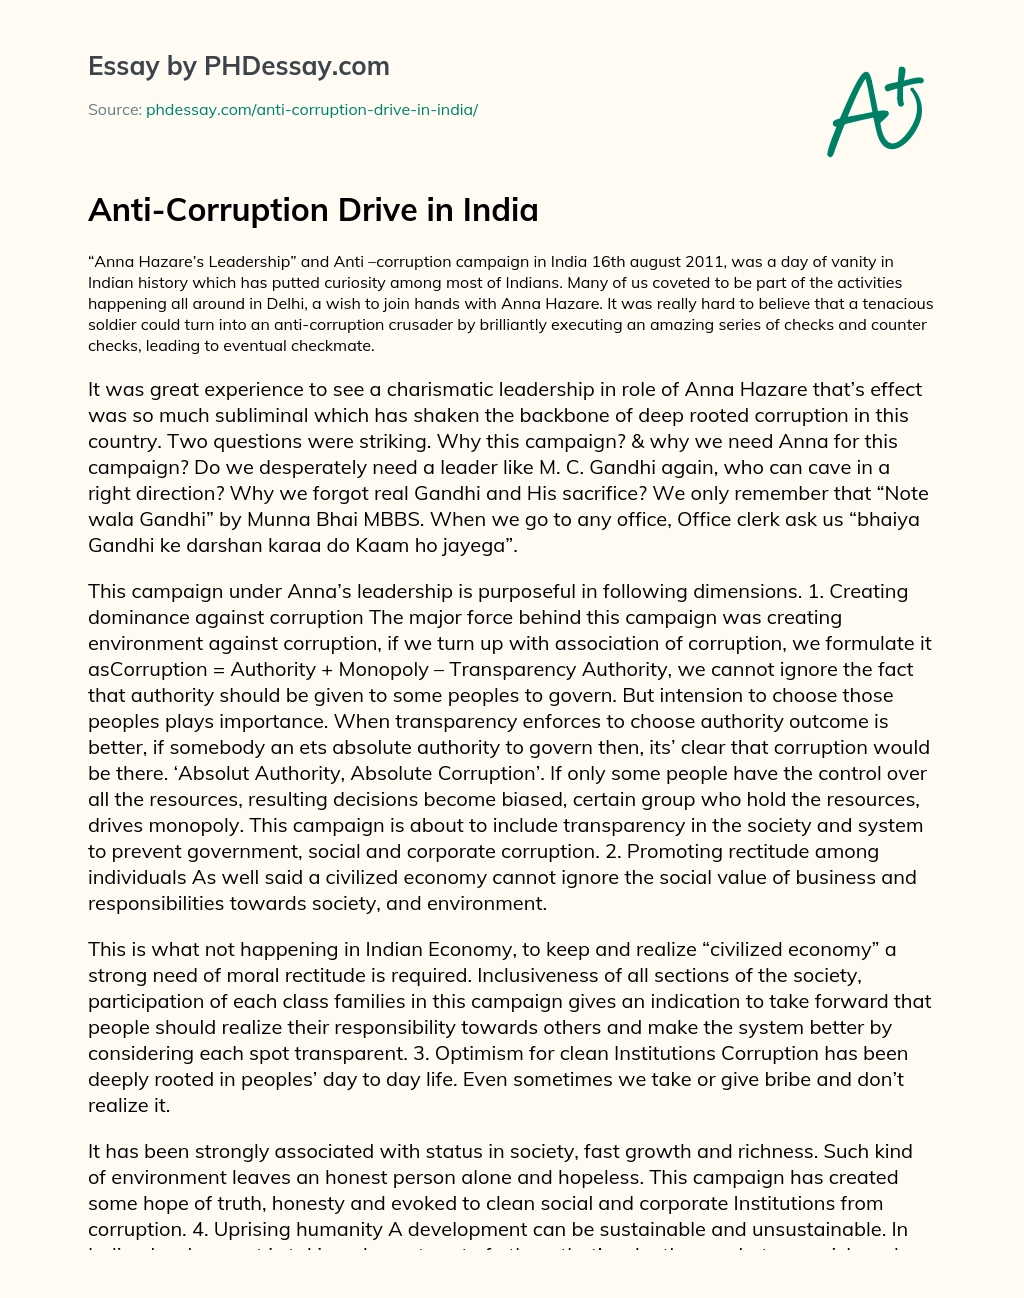 Anti-Corruption Drive in India essay